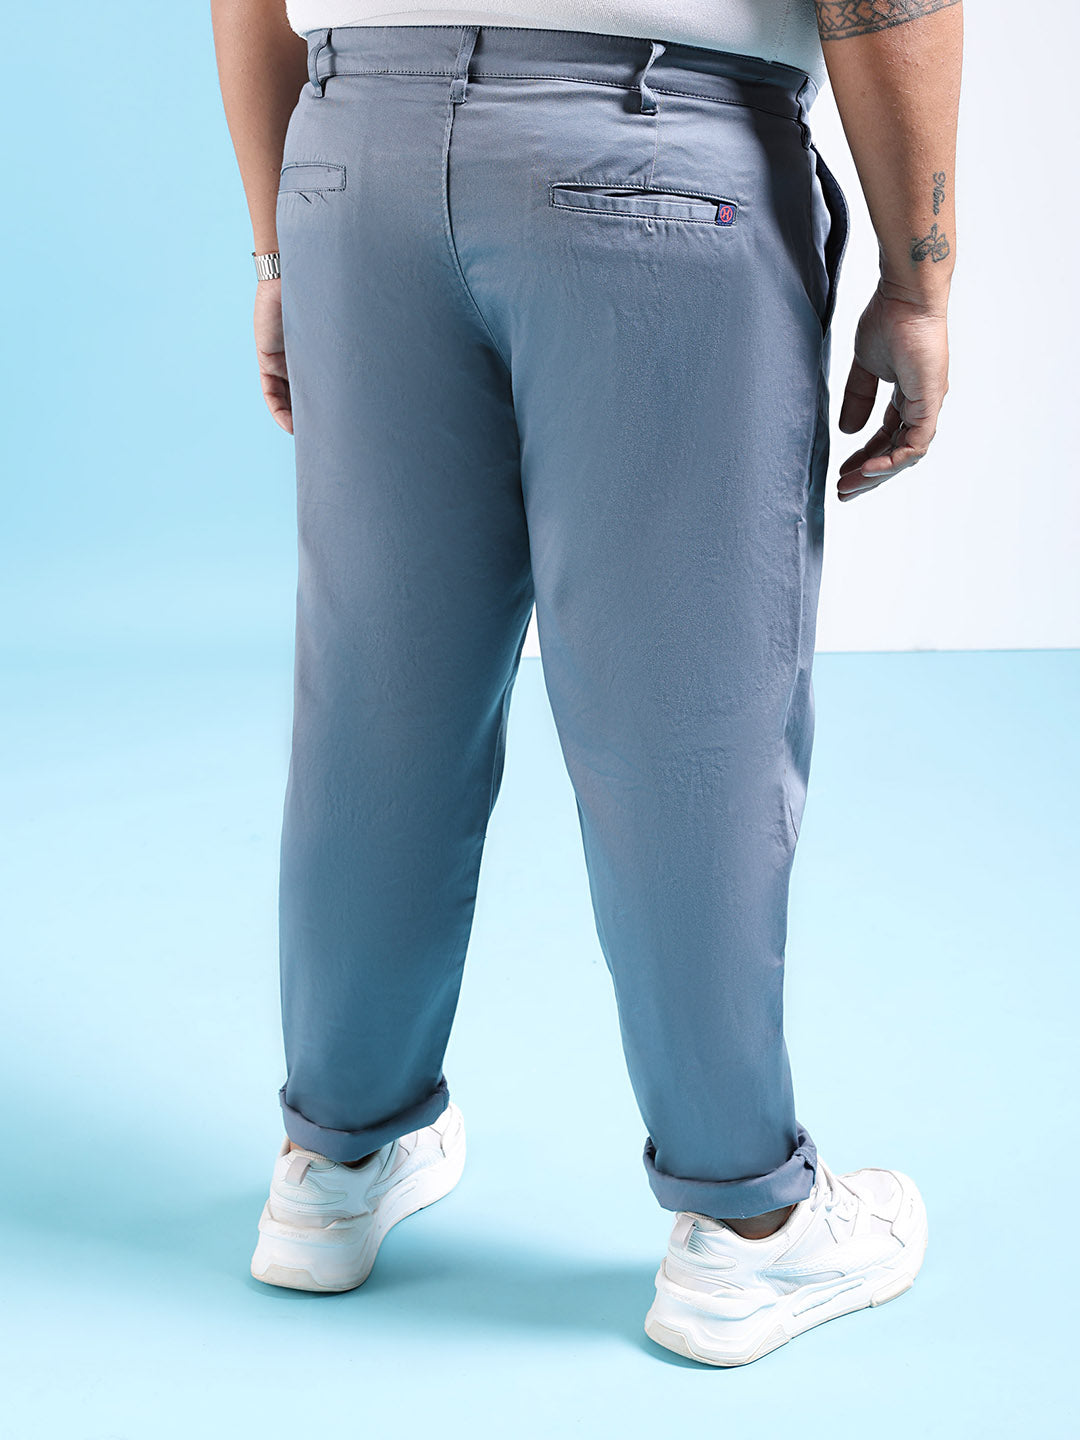 Shop Men Solid Trousers Online.